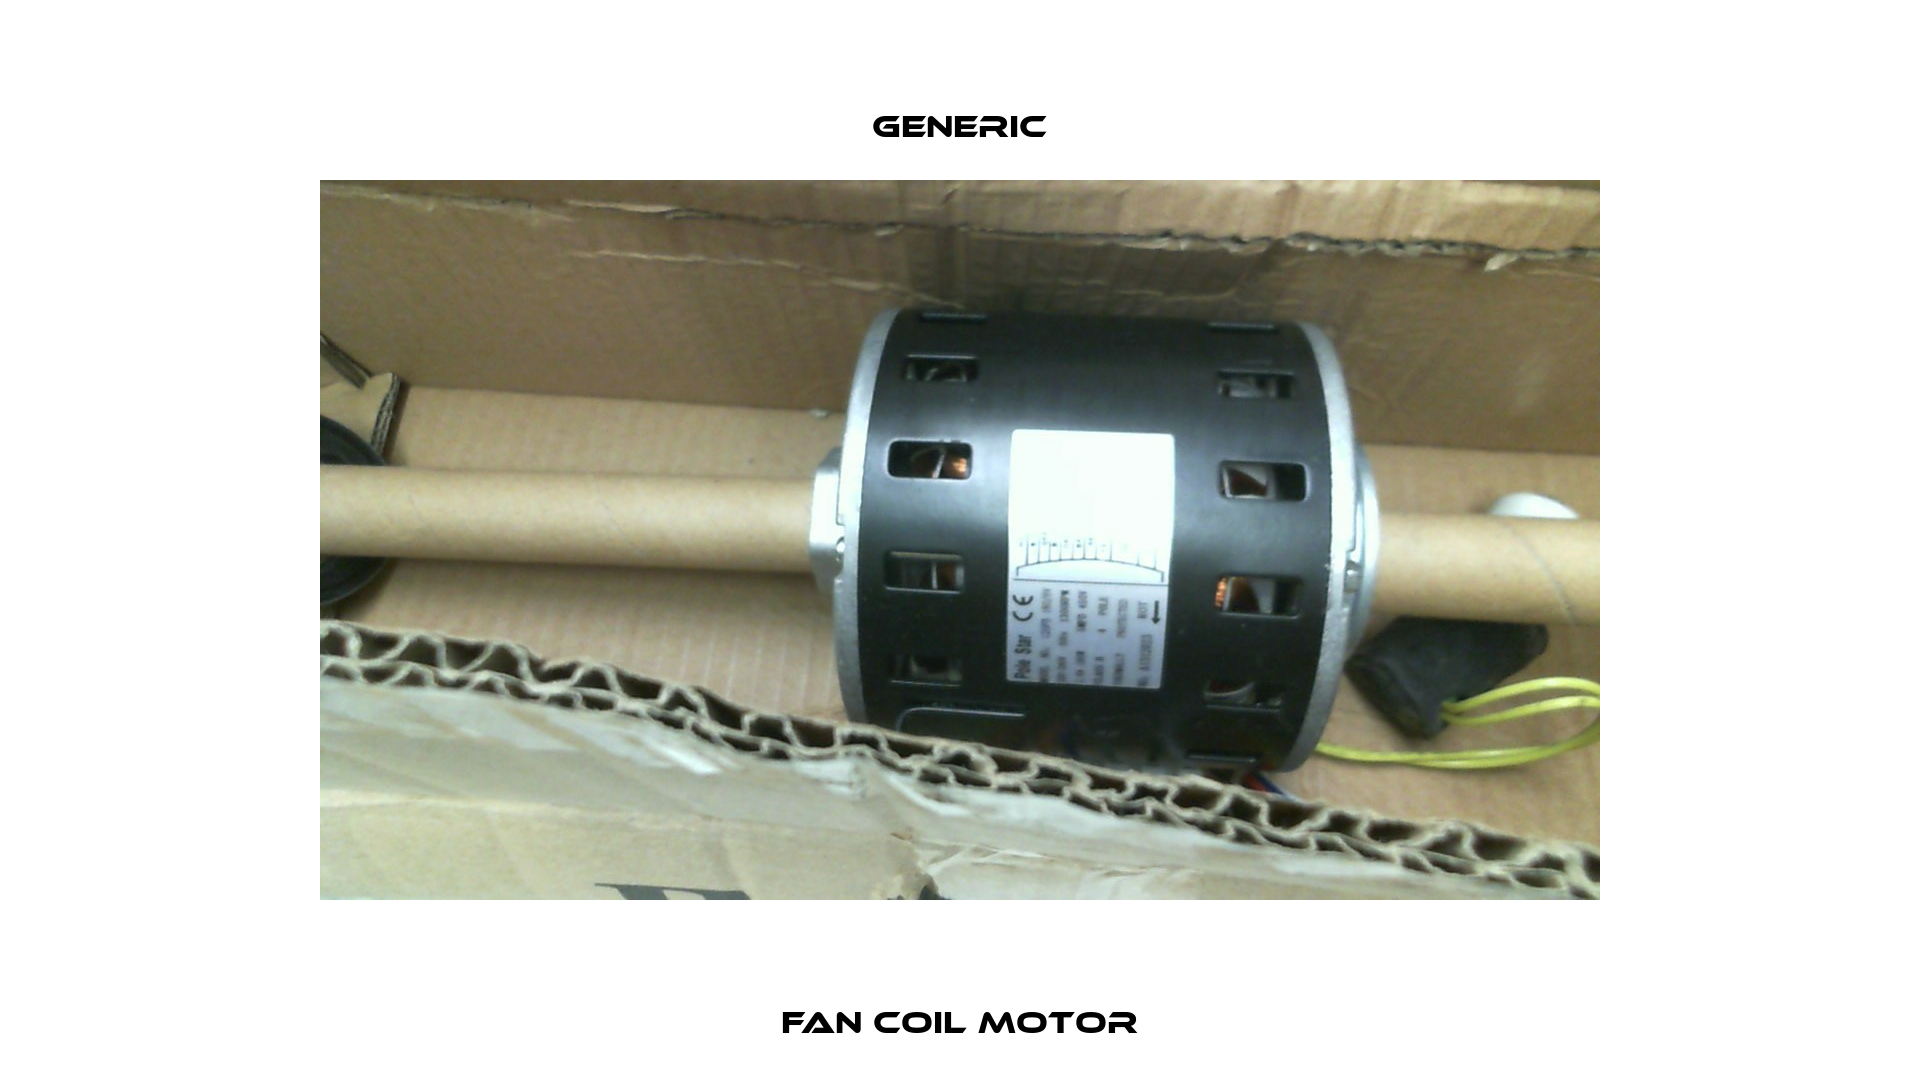 Fan Coil Motor GENERIC